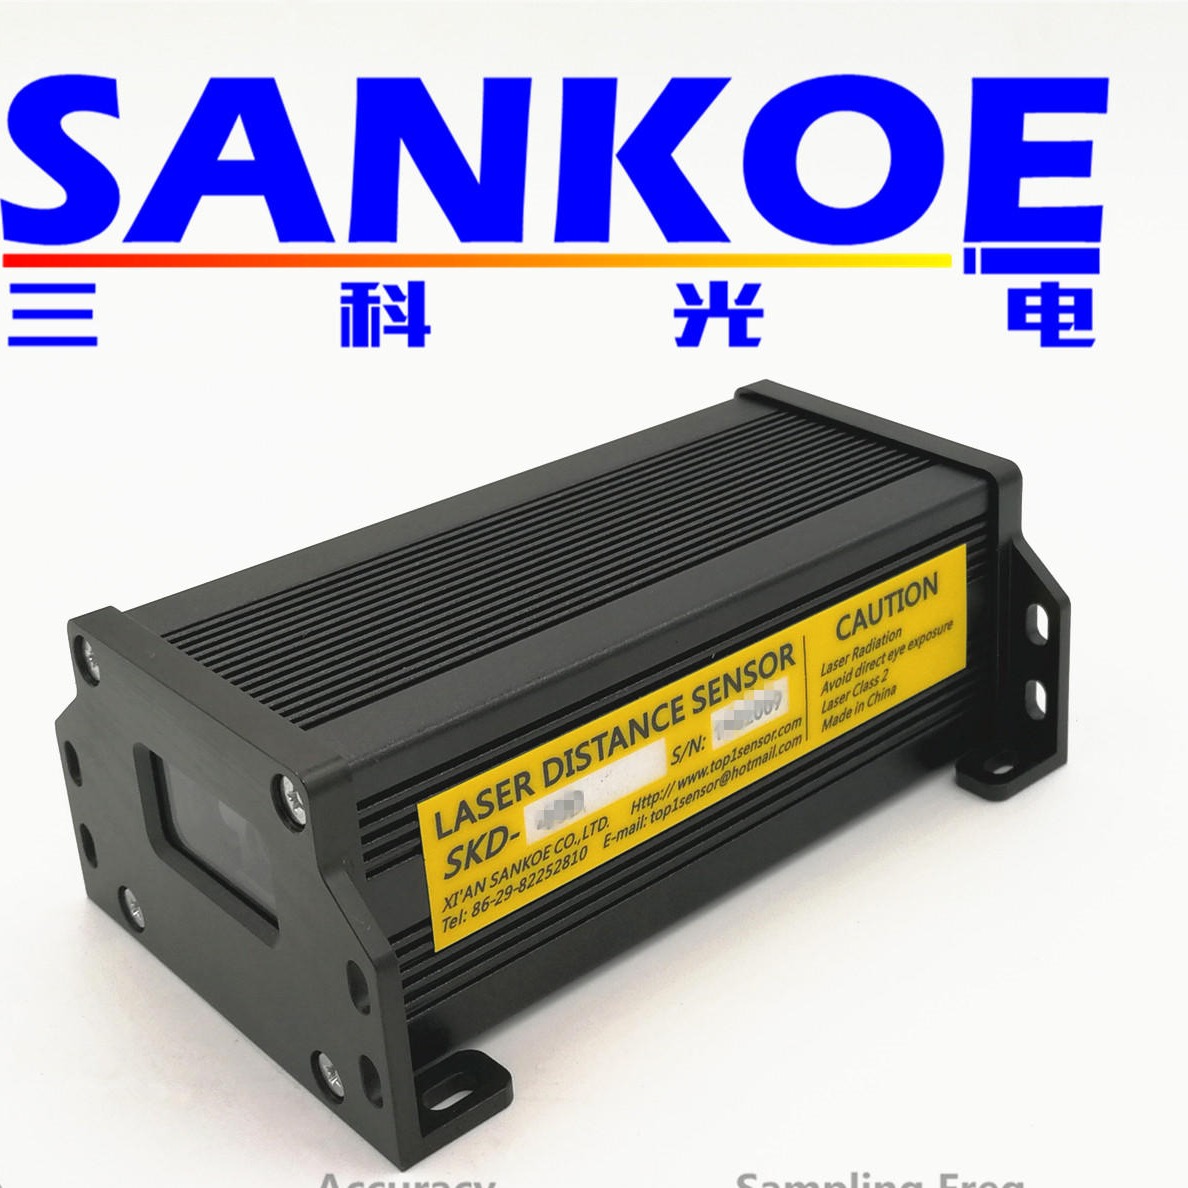 三科光电SANKOE 激光测距传感器 激光测距模块 工业激光测距 激光定位测距模块，RS232数字输出图片